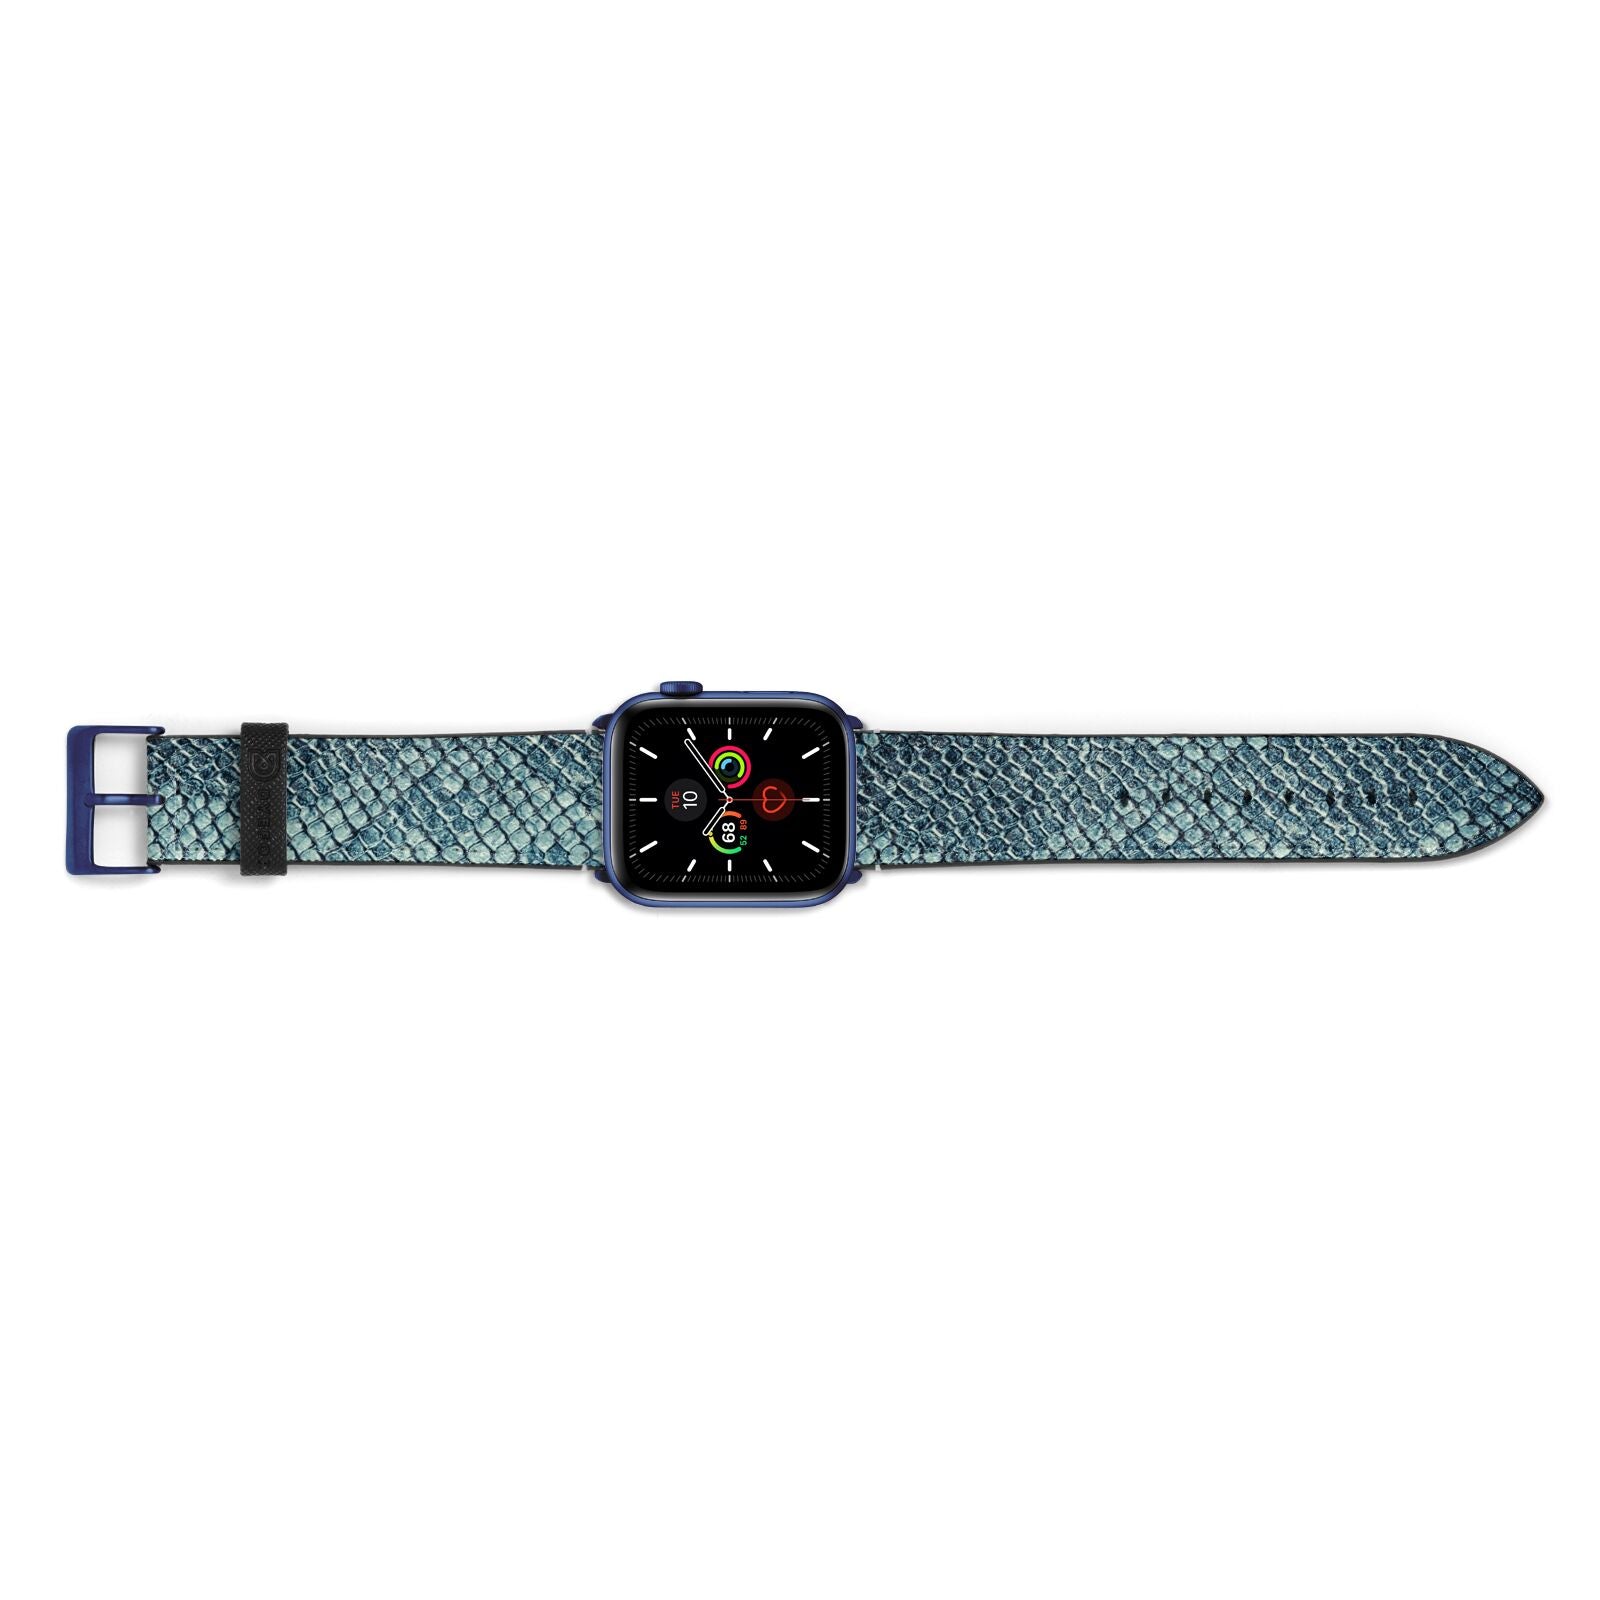 Teal Snakeskin Apple Watch Strap Landscape Image Blue Hardware